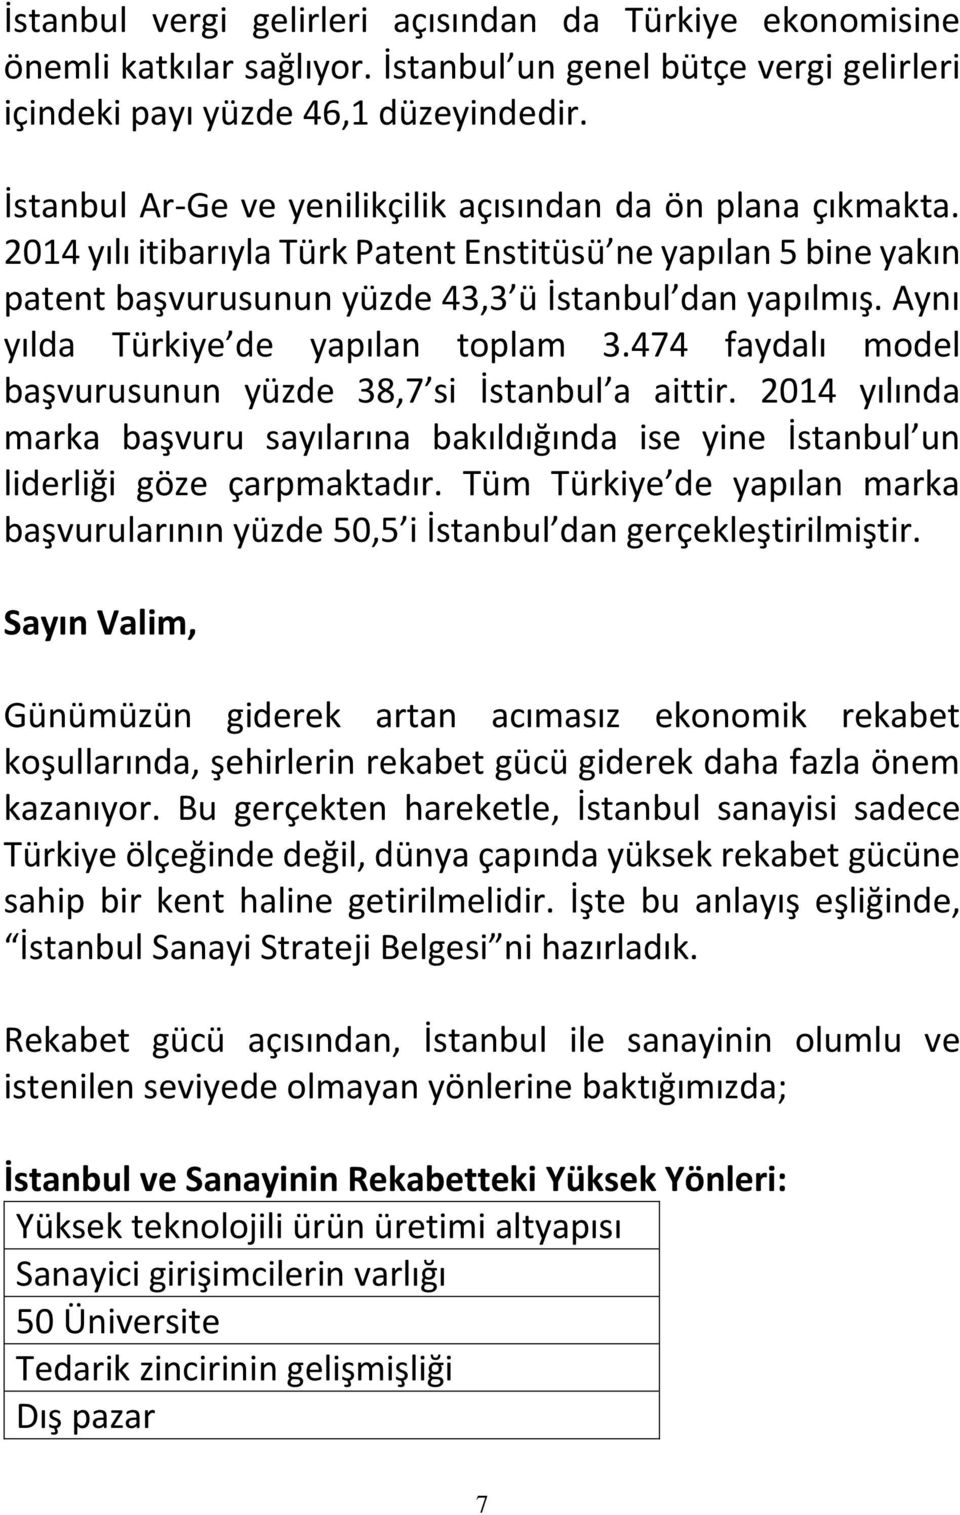 Aynı yılda Türkiye de yapılan toplam 3.474 faydalı model başvurusunun yüzde 38,7 si İstanbul a aittir.